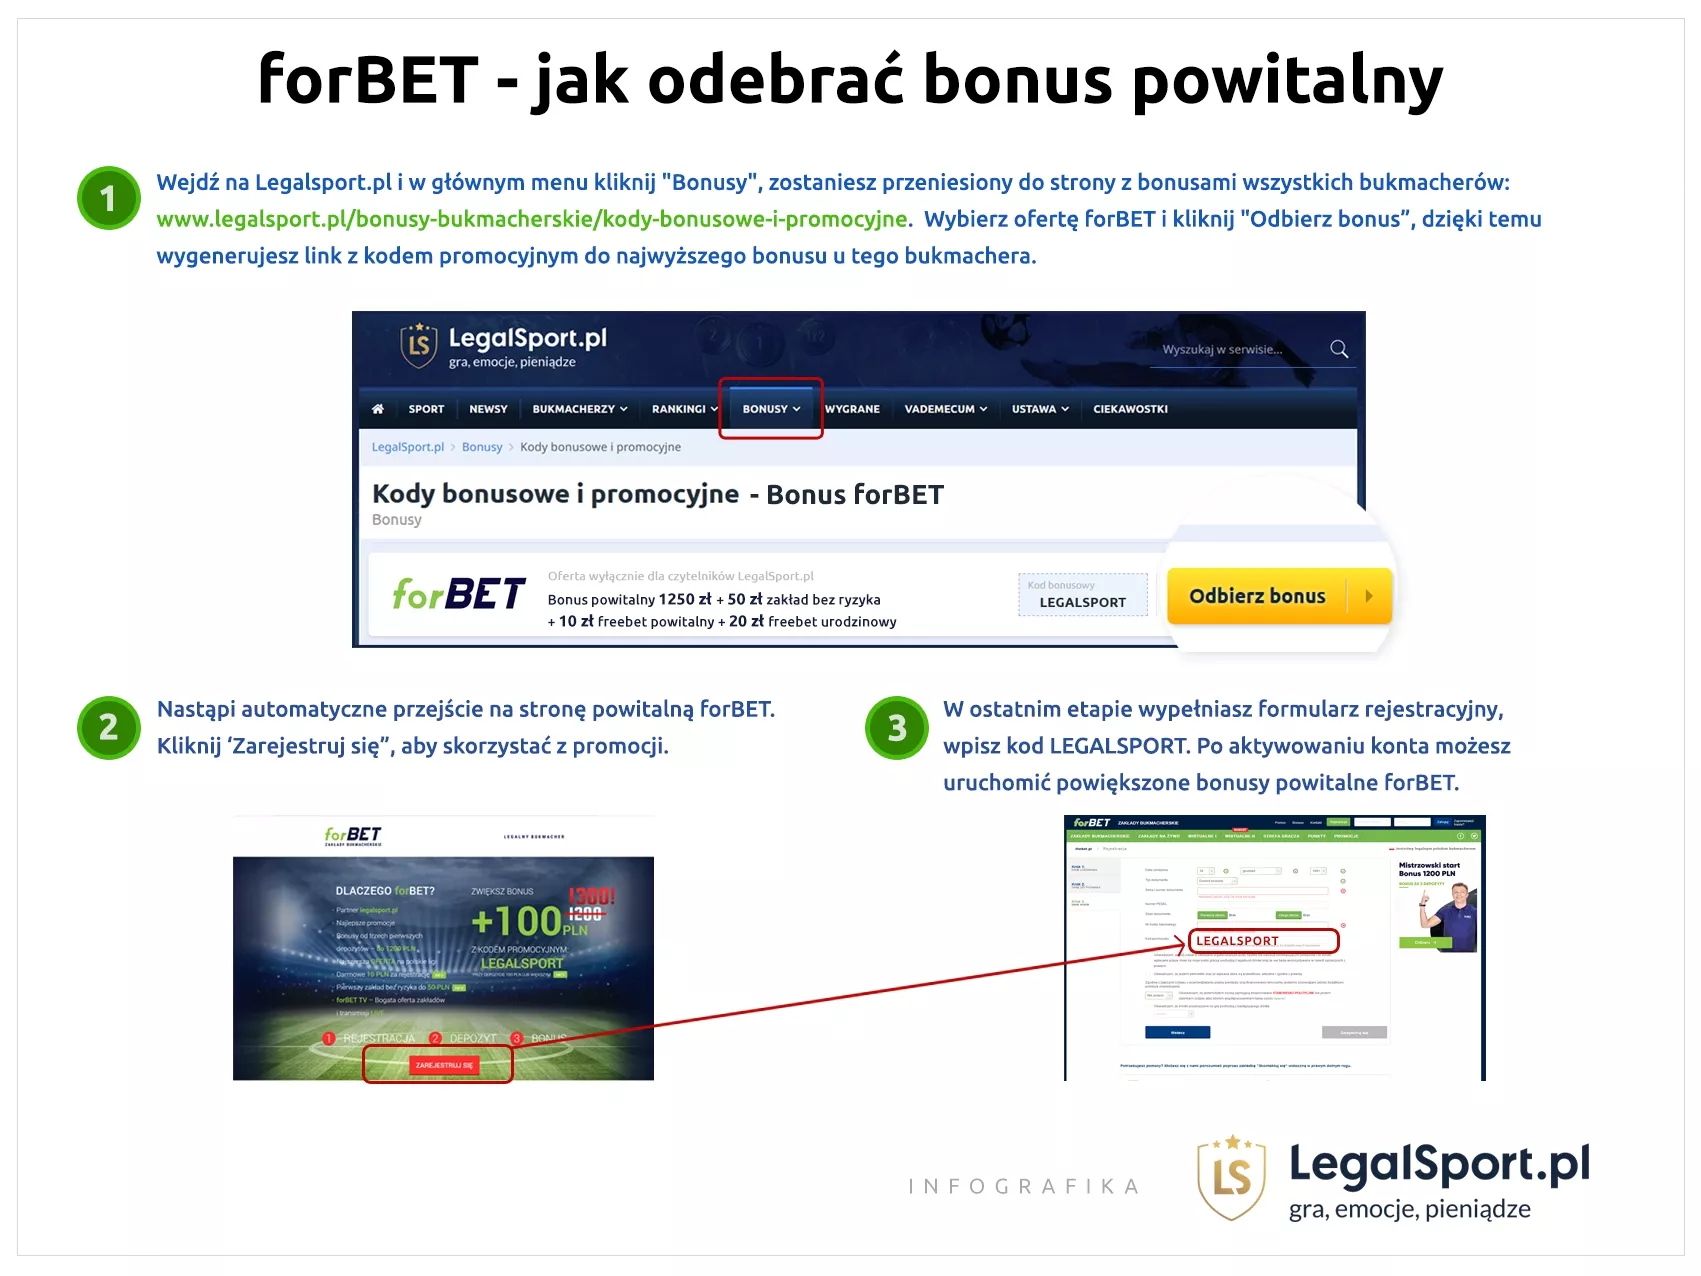 Instrukcja jak odebrać bonus powitalny z kodem promocyjnym w forBET Zakłady Bukmacherskie - infografika